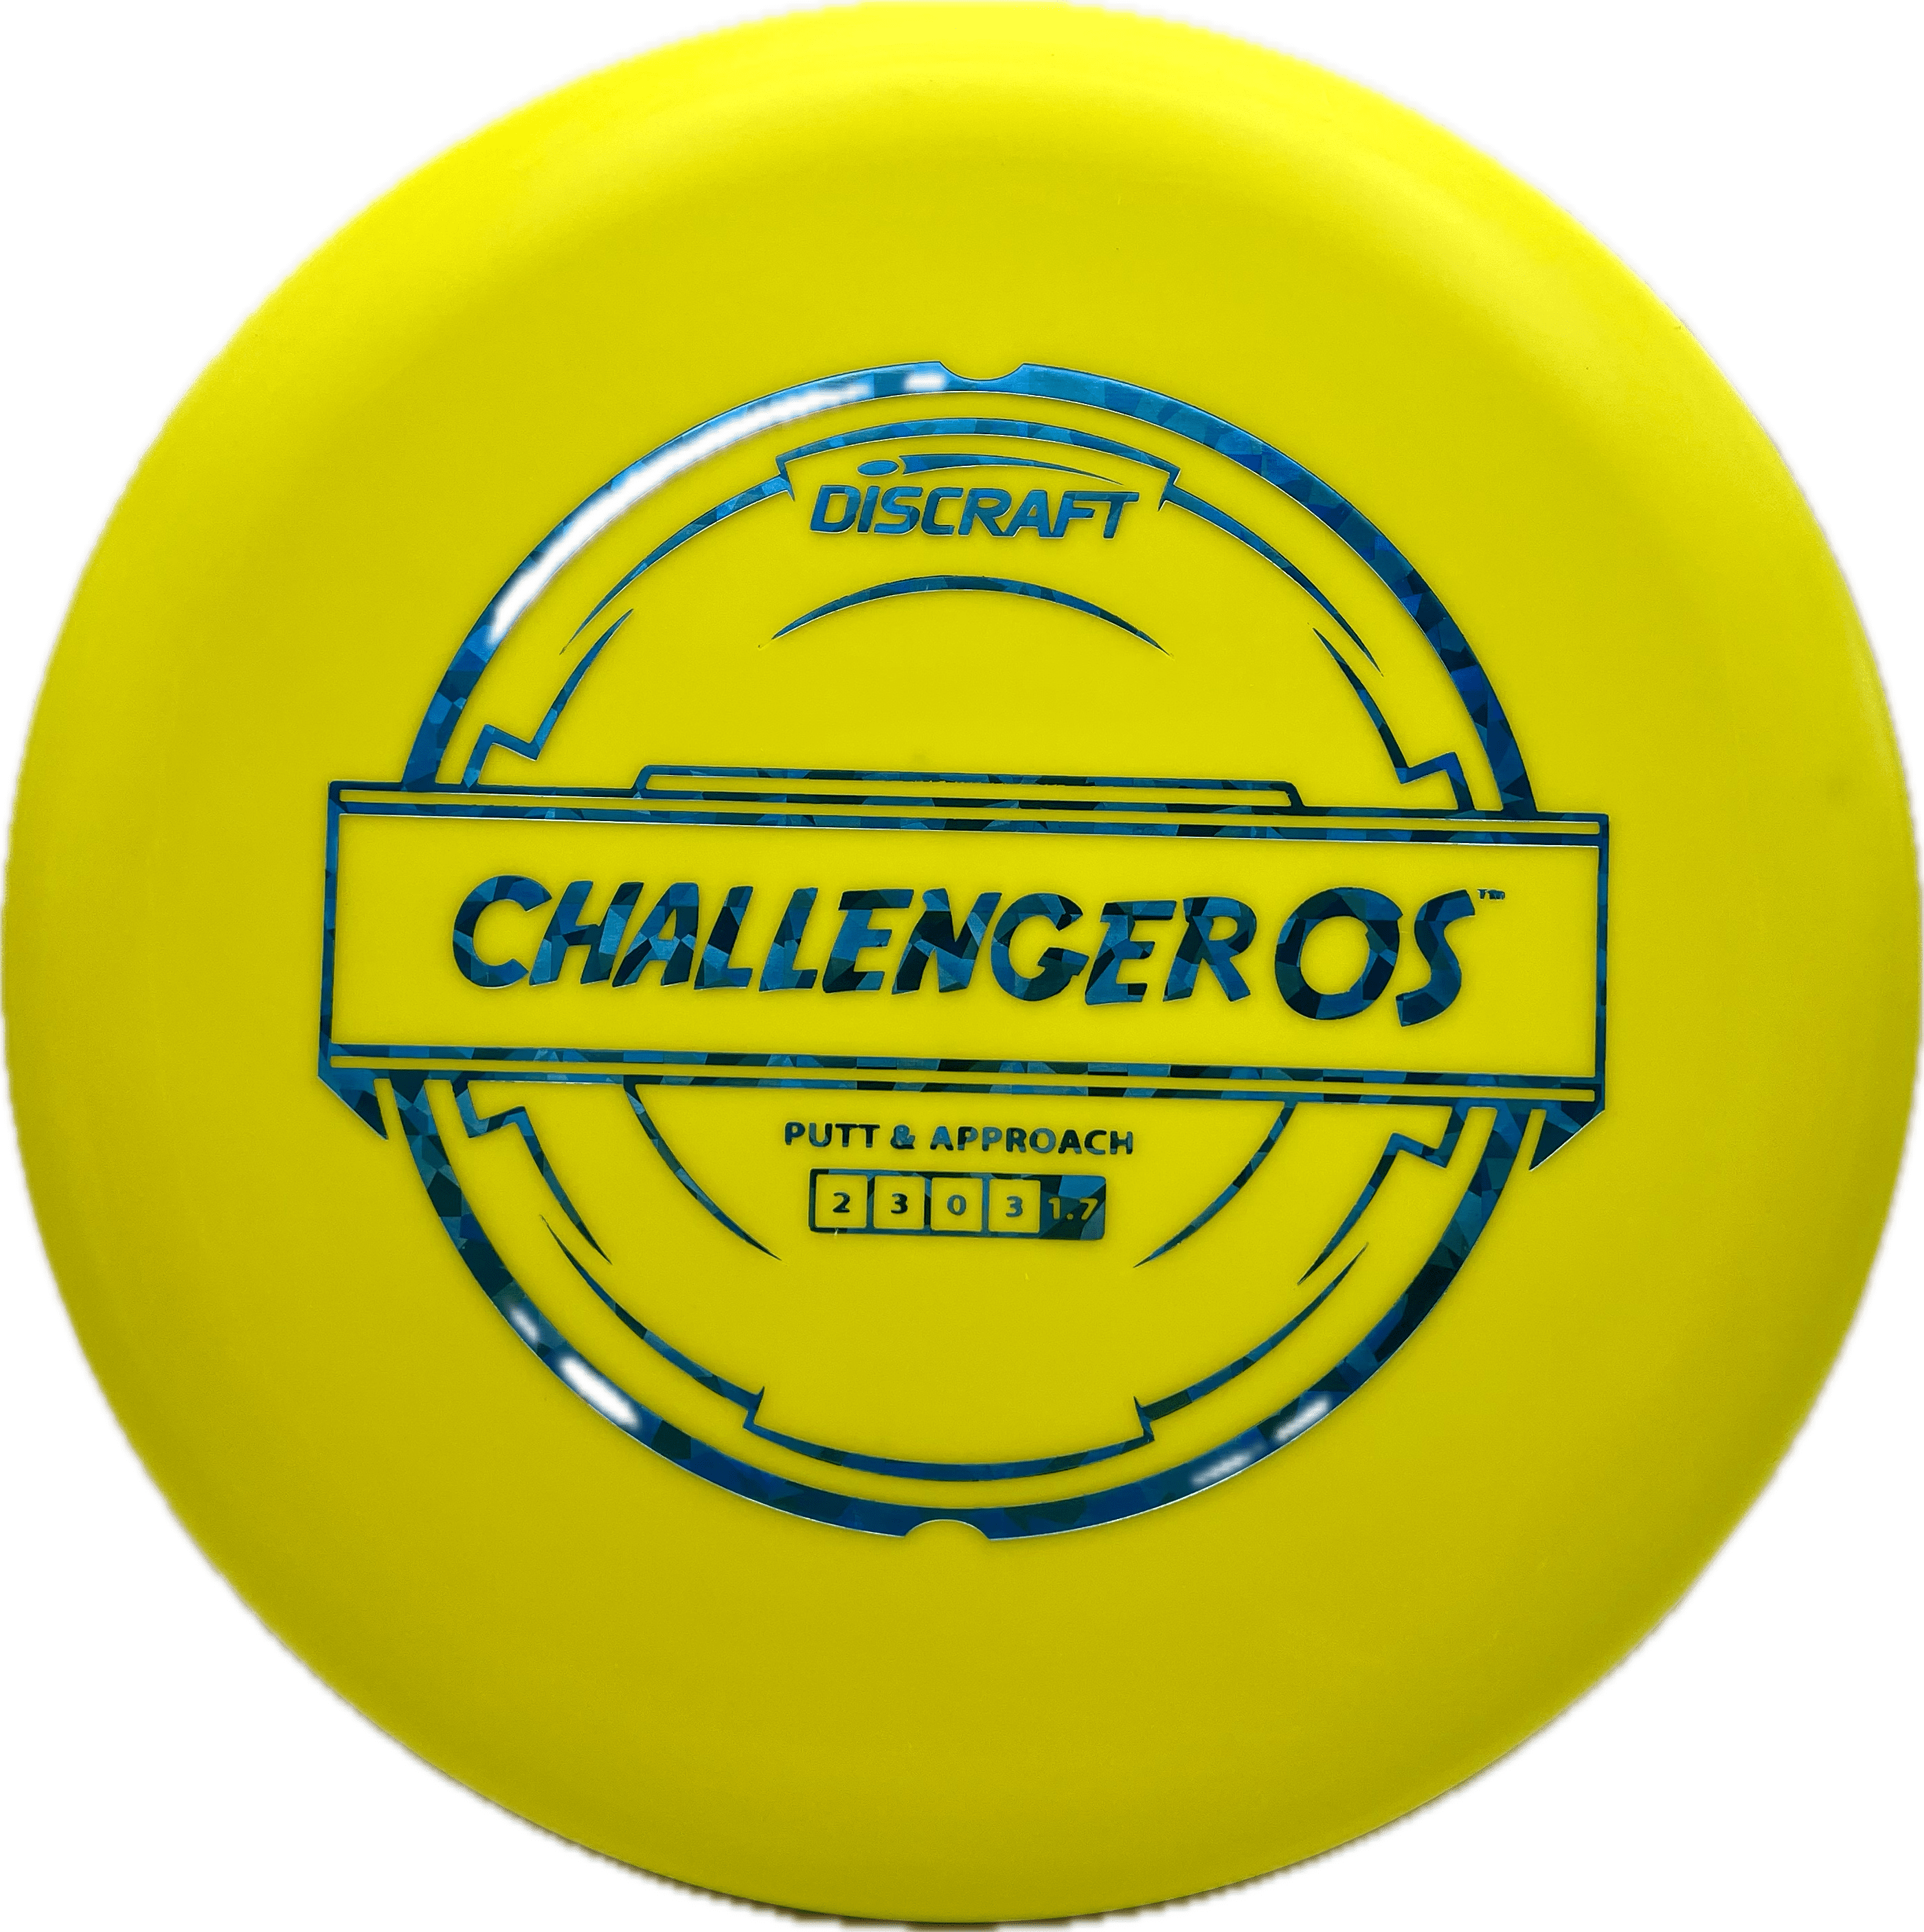 Overthrow Disc Golf Disc Discraft Challenger OS, Putter Line, 170-172, Yellow, Blue Shatter